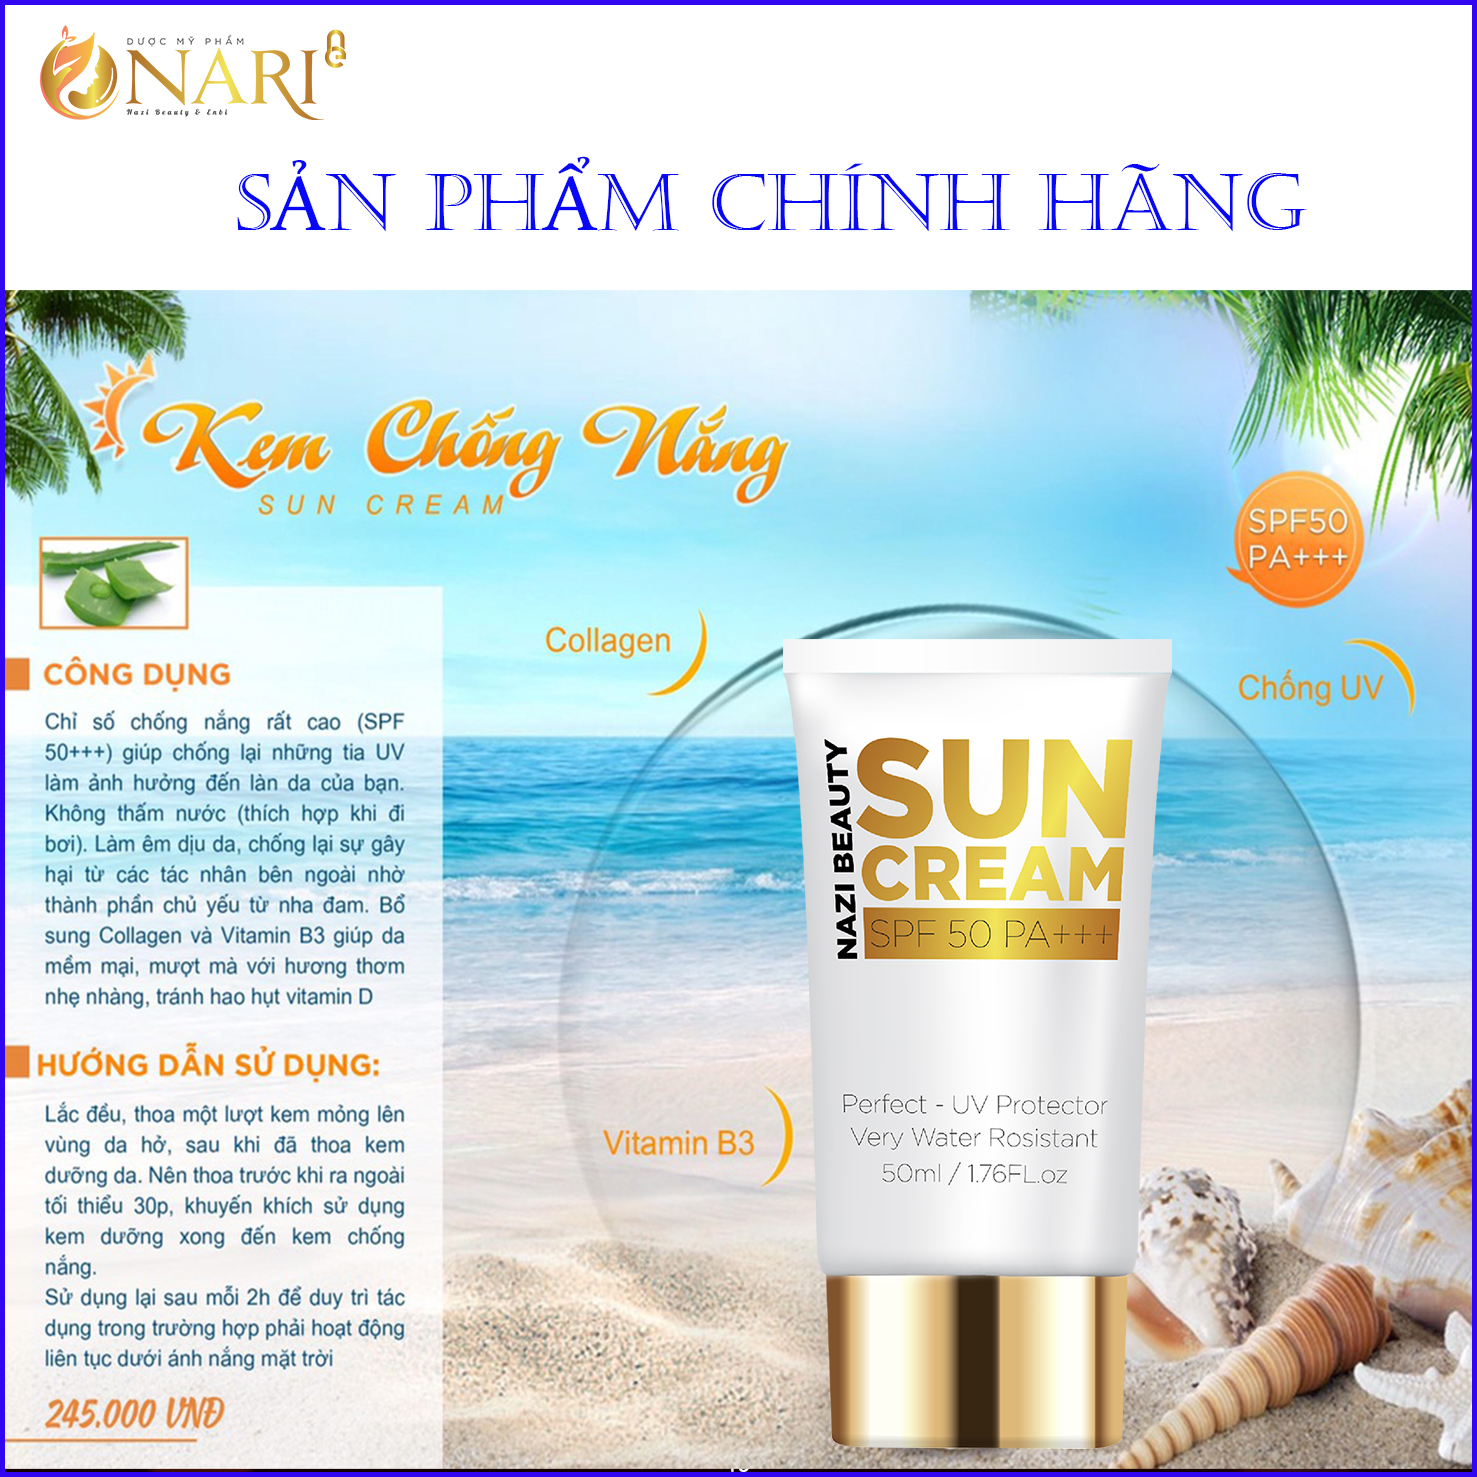 Kem chống nắng dưỡng da dưỡng trắng Nari (Sun Cream) Thay make bảo vệ làn da các tia cực tím UVA UVB Sở hữu chỉ số SPF 50 ++